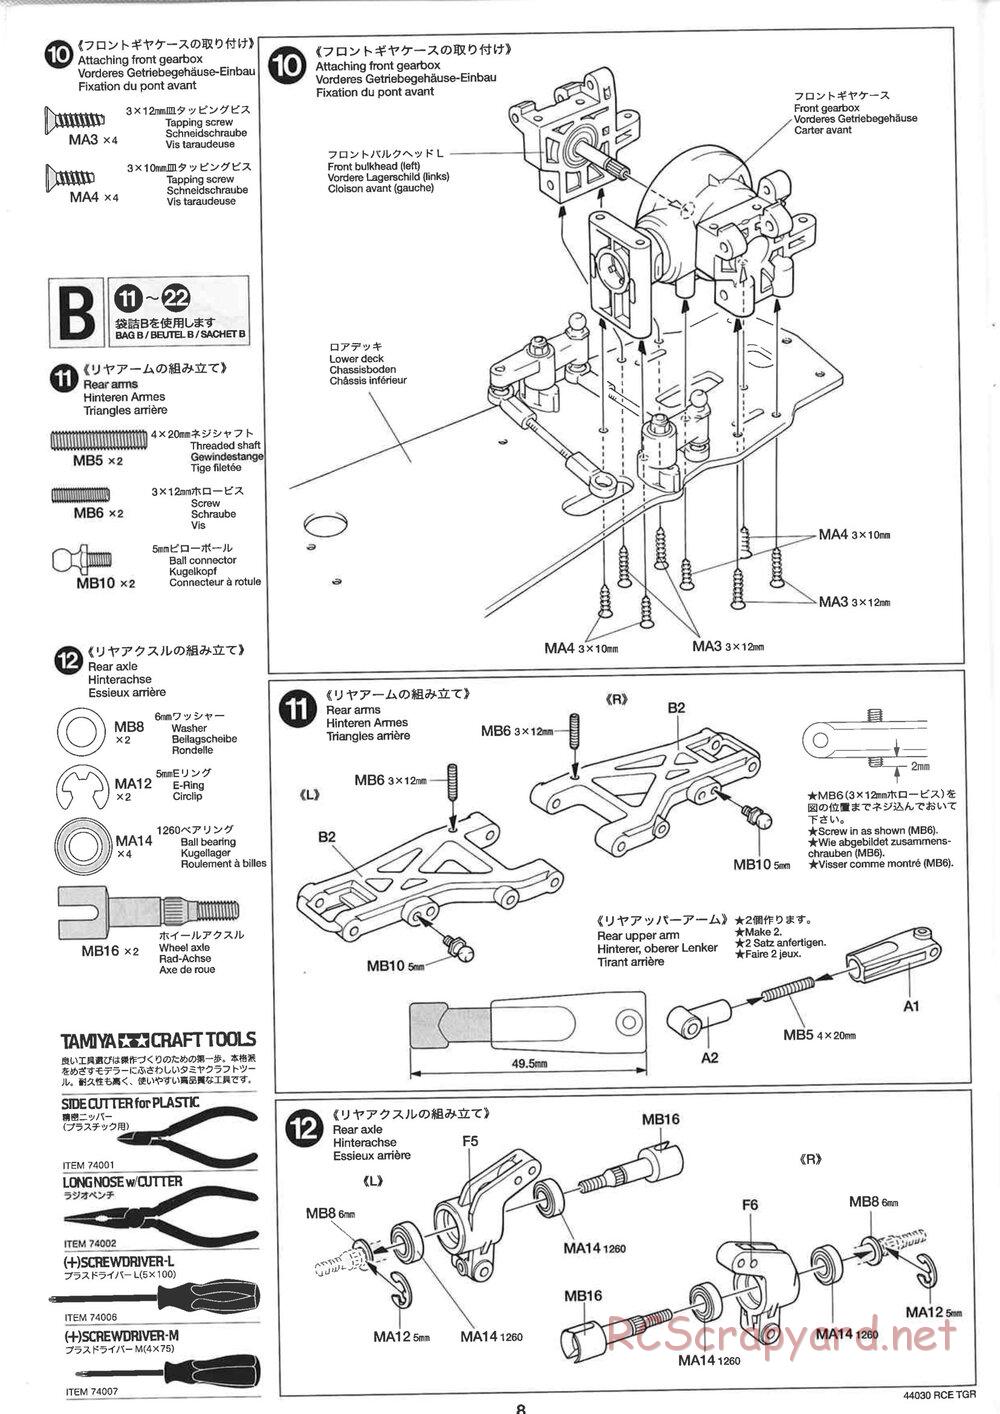 Tamiya - TGR Chassis - Manual - Page 8